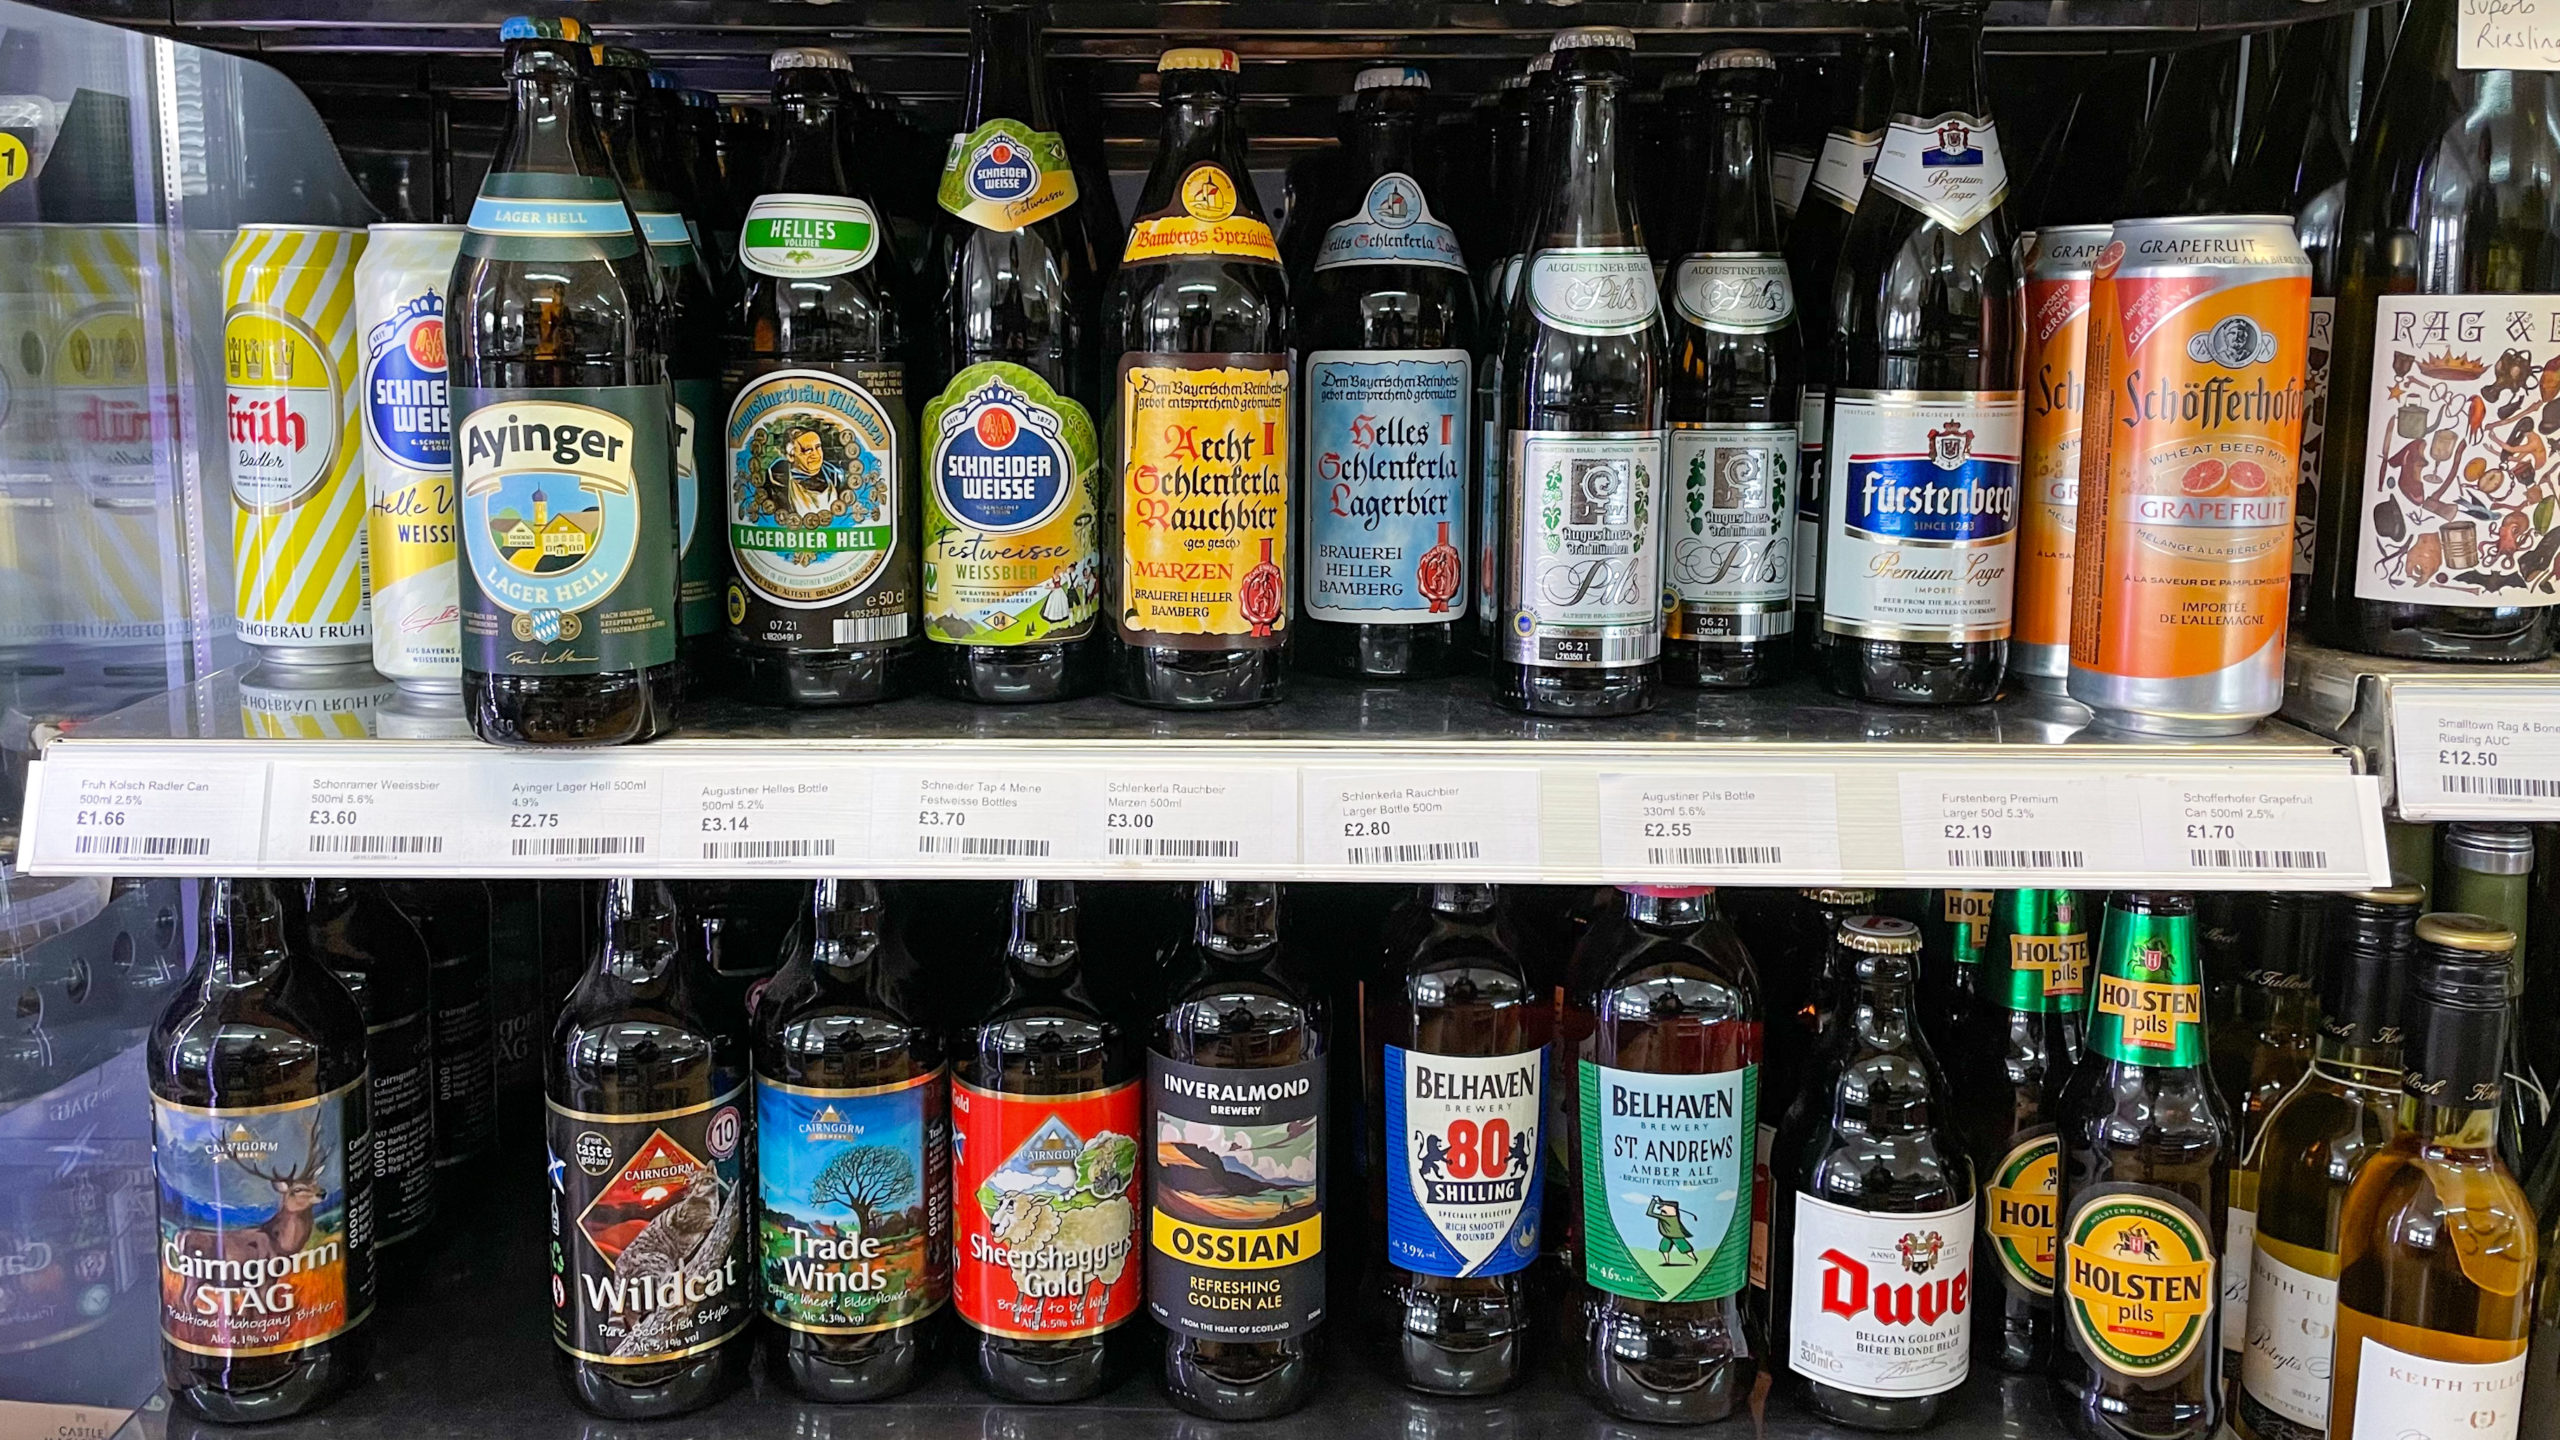 German Beer Bottles in a fridge